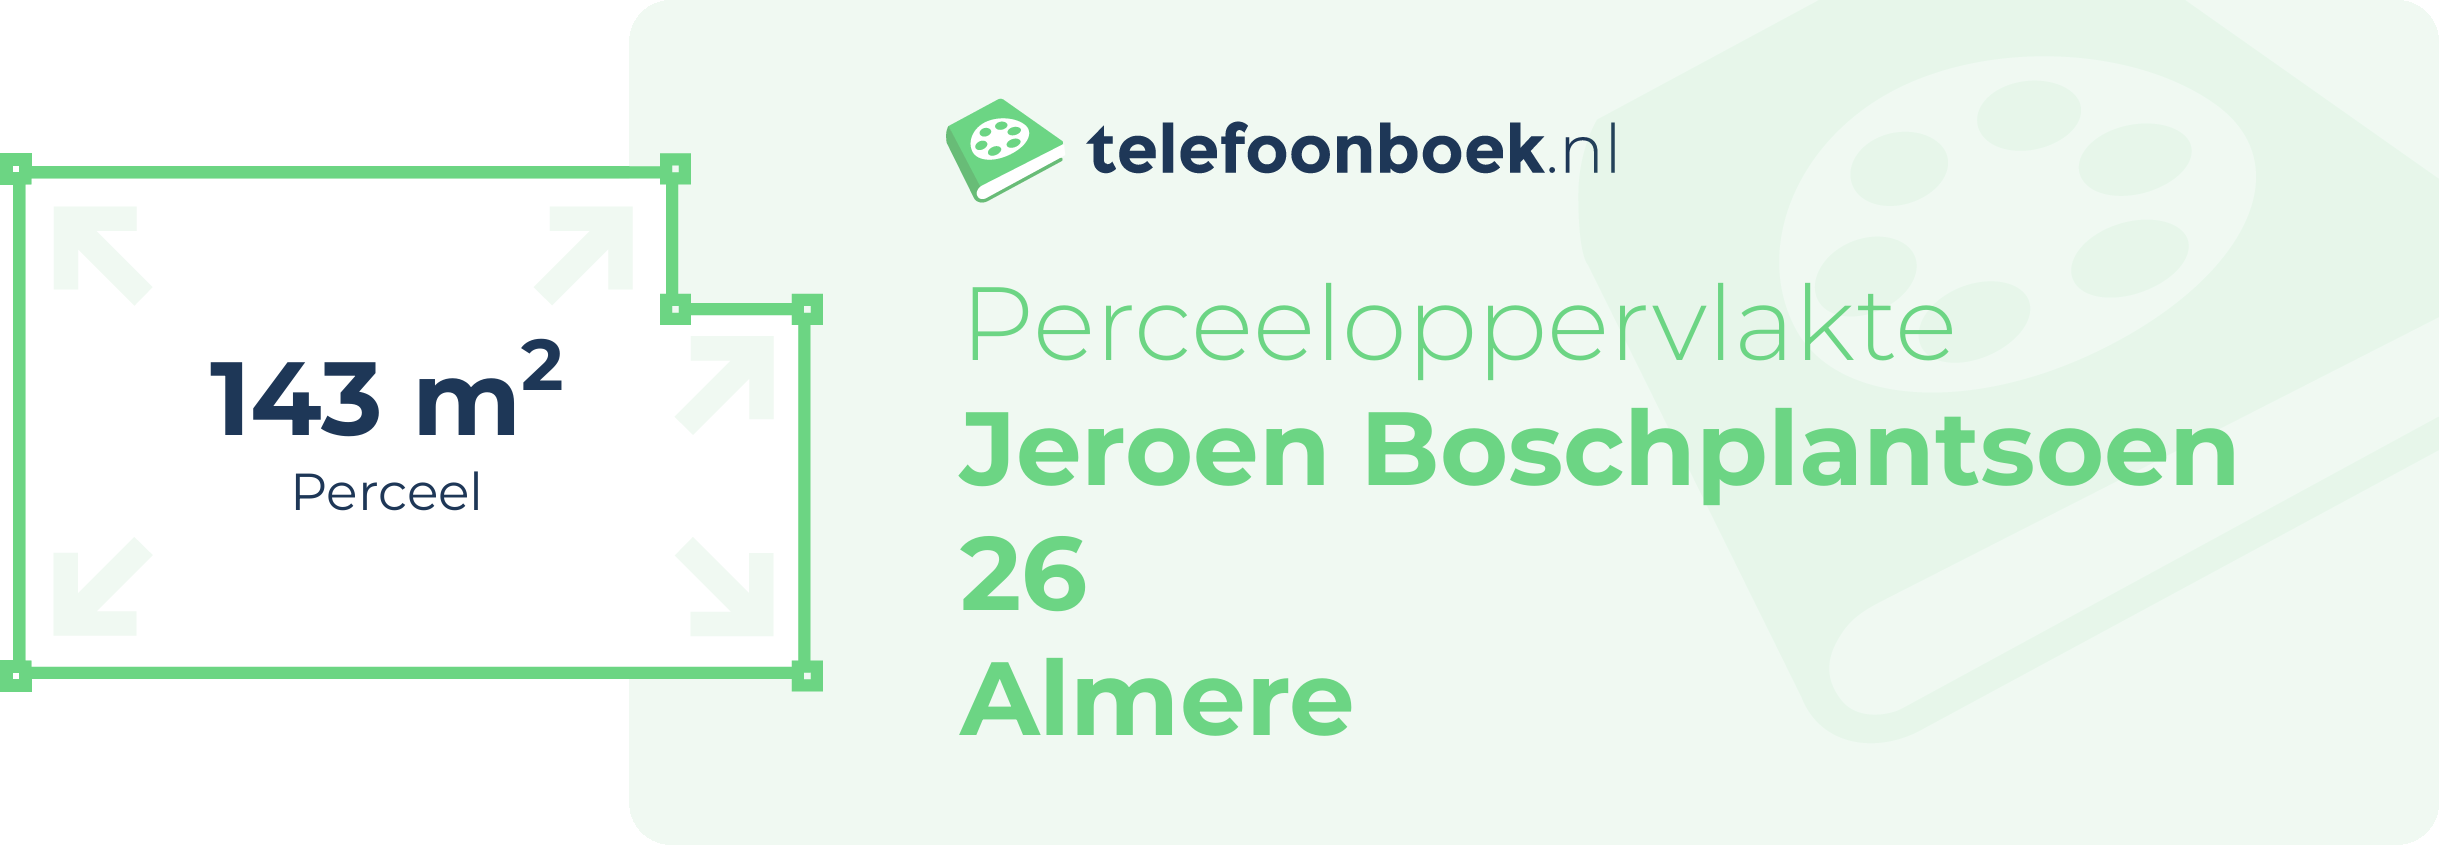 Perceeloppervlakte Jeroen Boschplantsoen 26 Almere